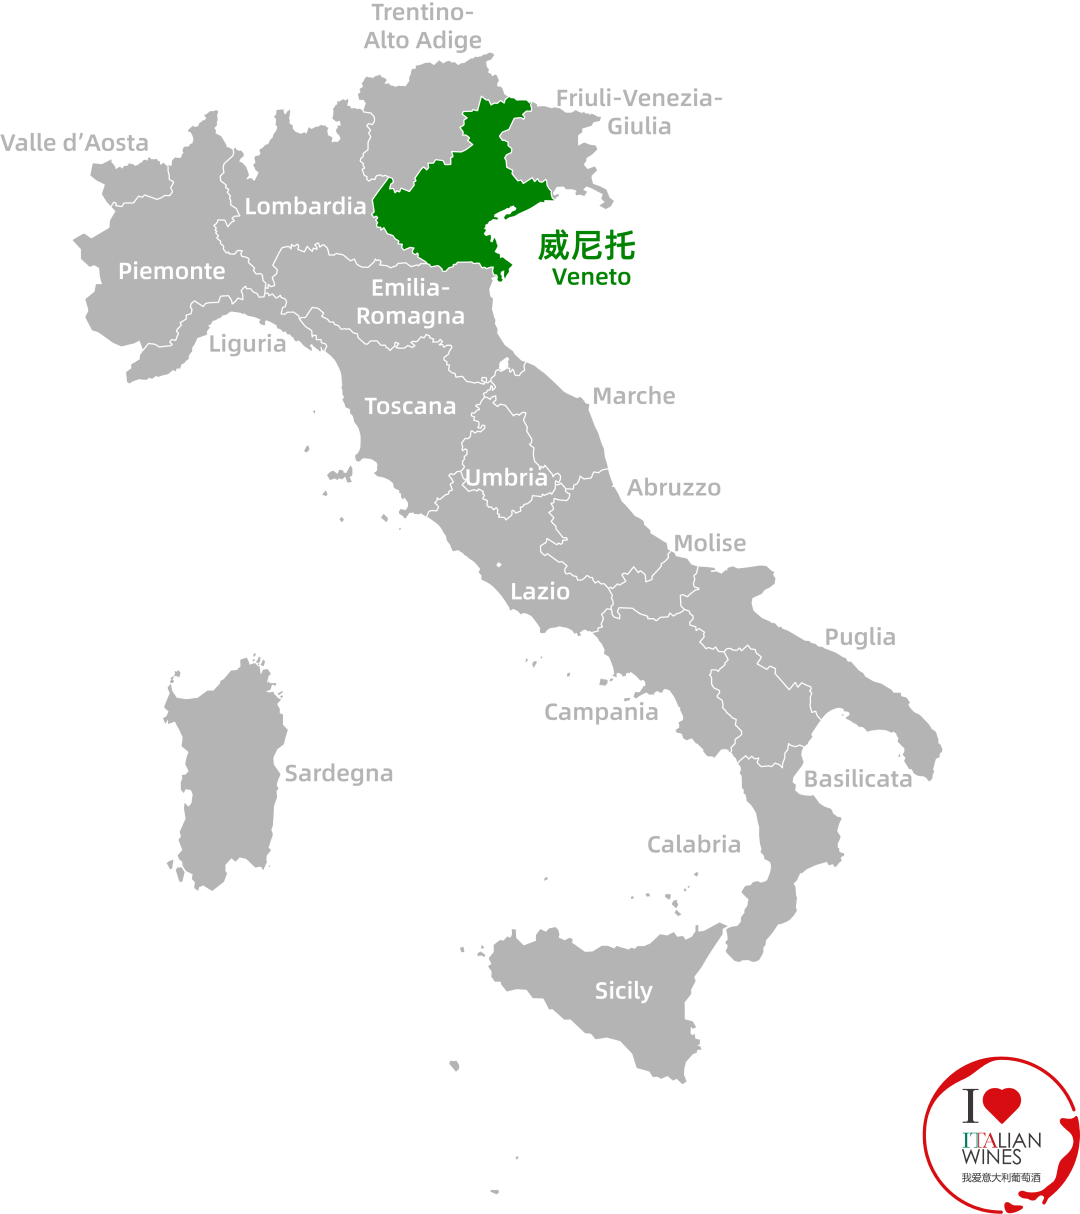 而以威尼斯为首府的威尼托(veneto)大区,除了拥有古罗马与文艺复兴的